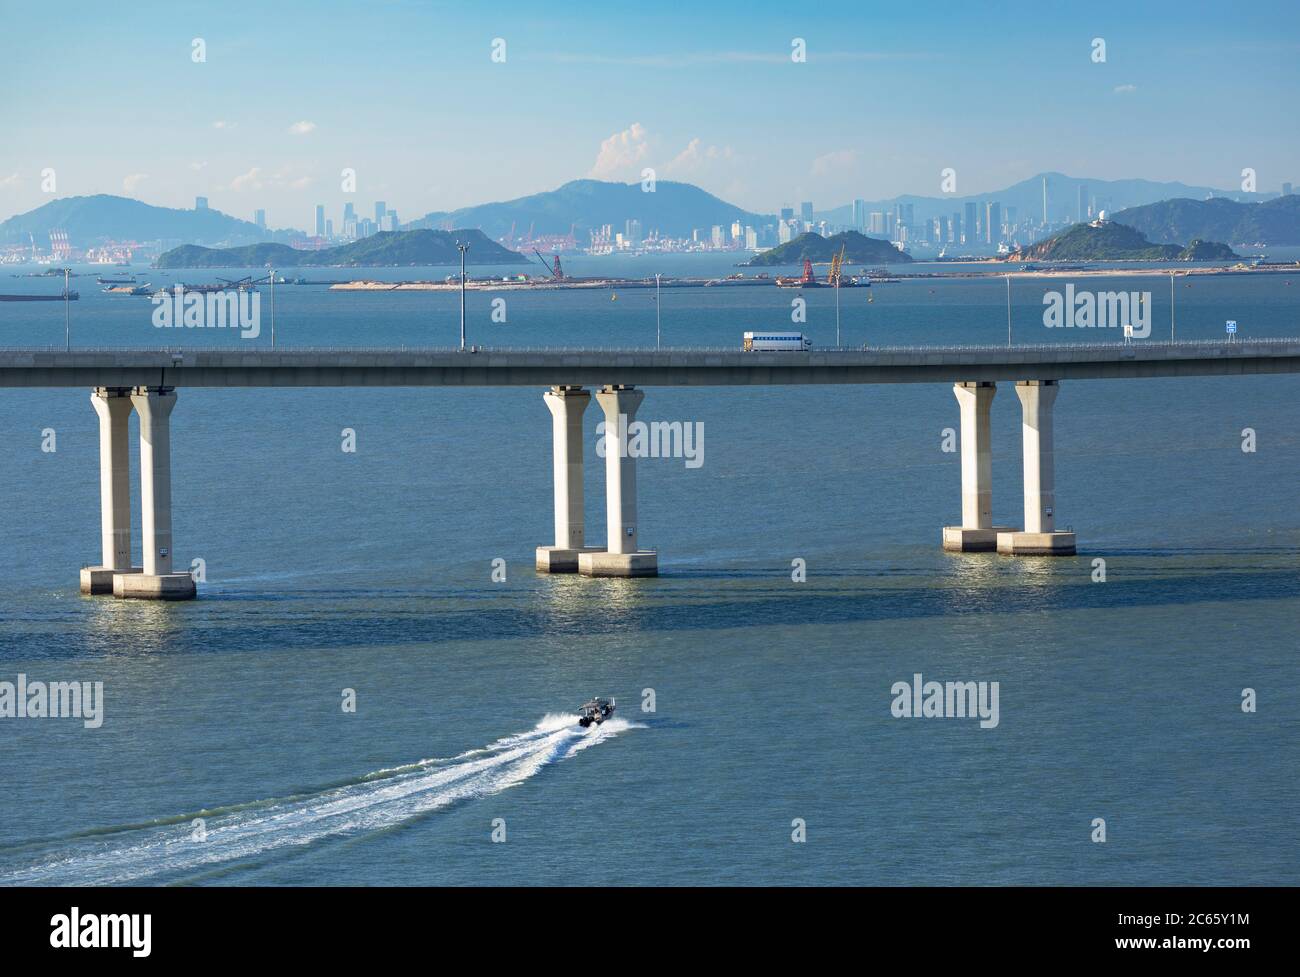 Brücke Hong Kong-Zhuhai-Macau, Lantau Island, Hong Kong Stockfoto